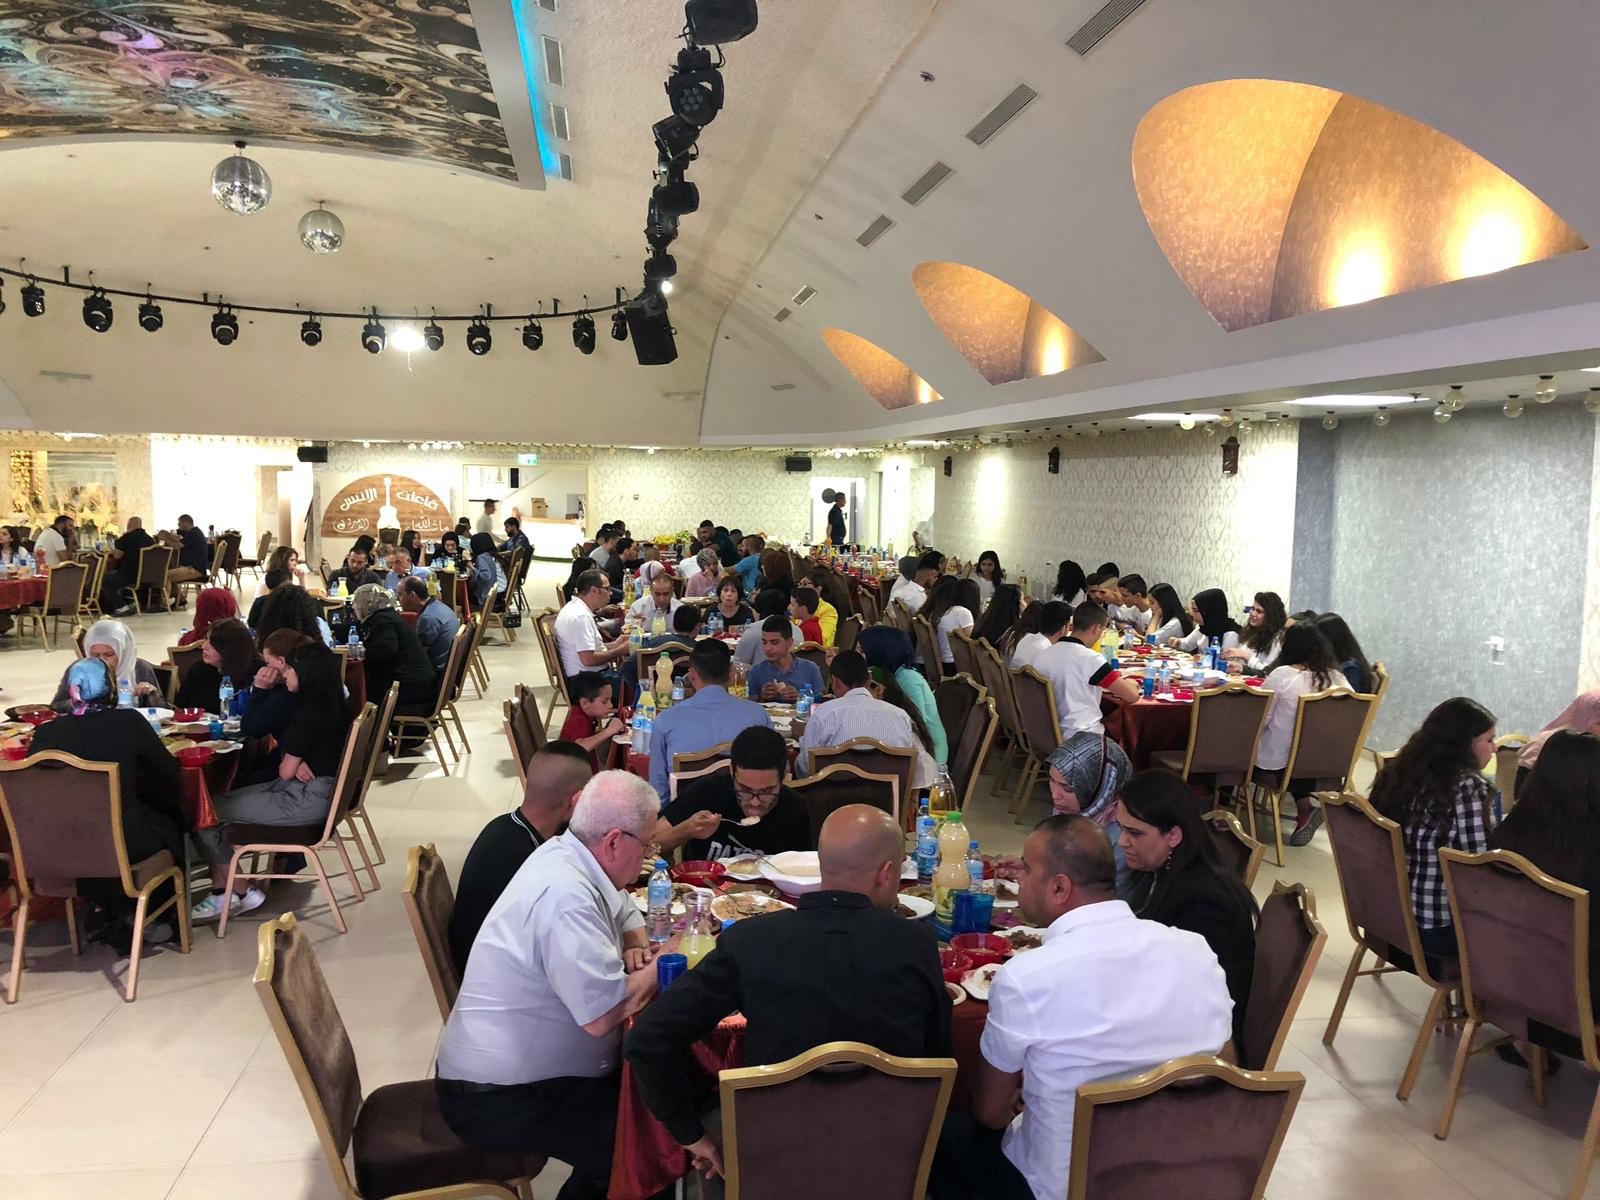 ام الفحم: افطار رمضاني لطلّاب الجامعات بتنظيم من "مساواة" و" المبادرة الفحماويّة" -11